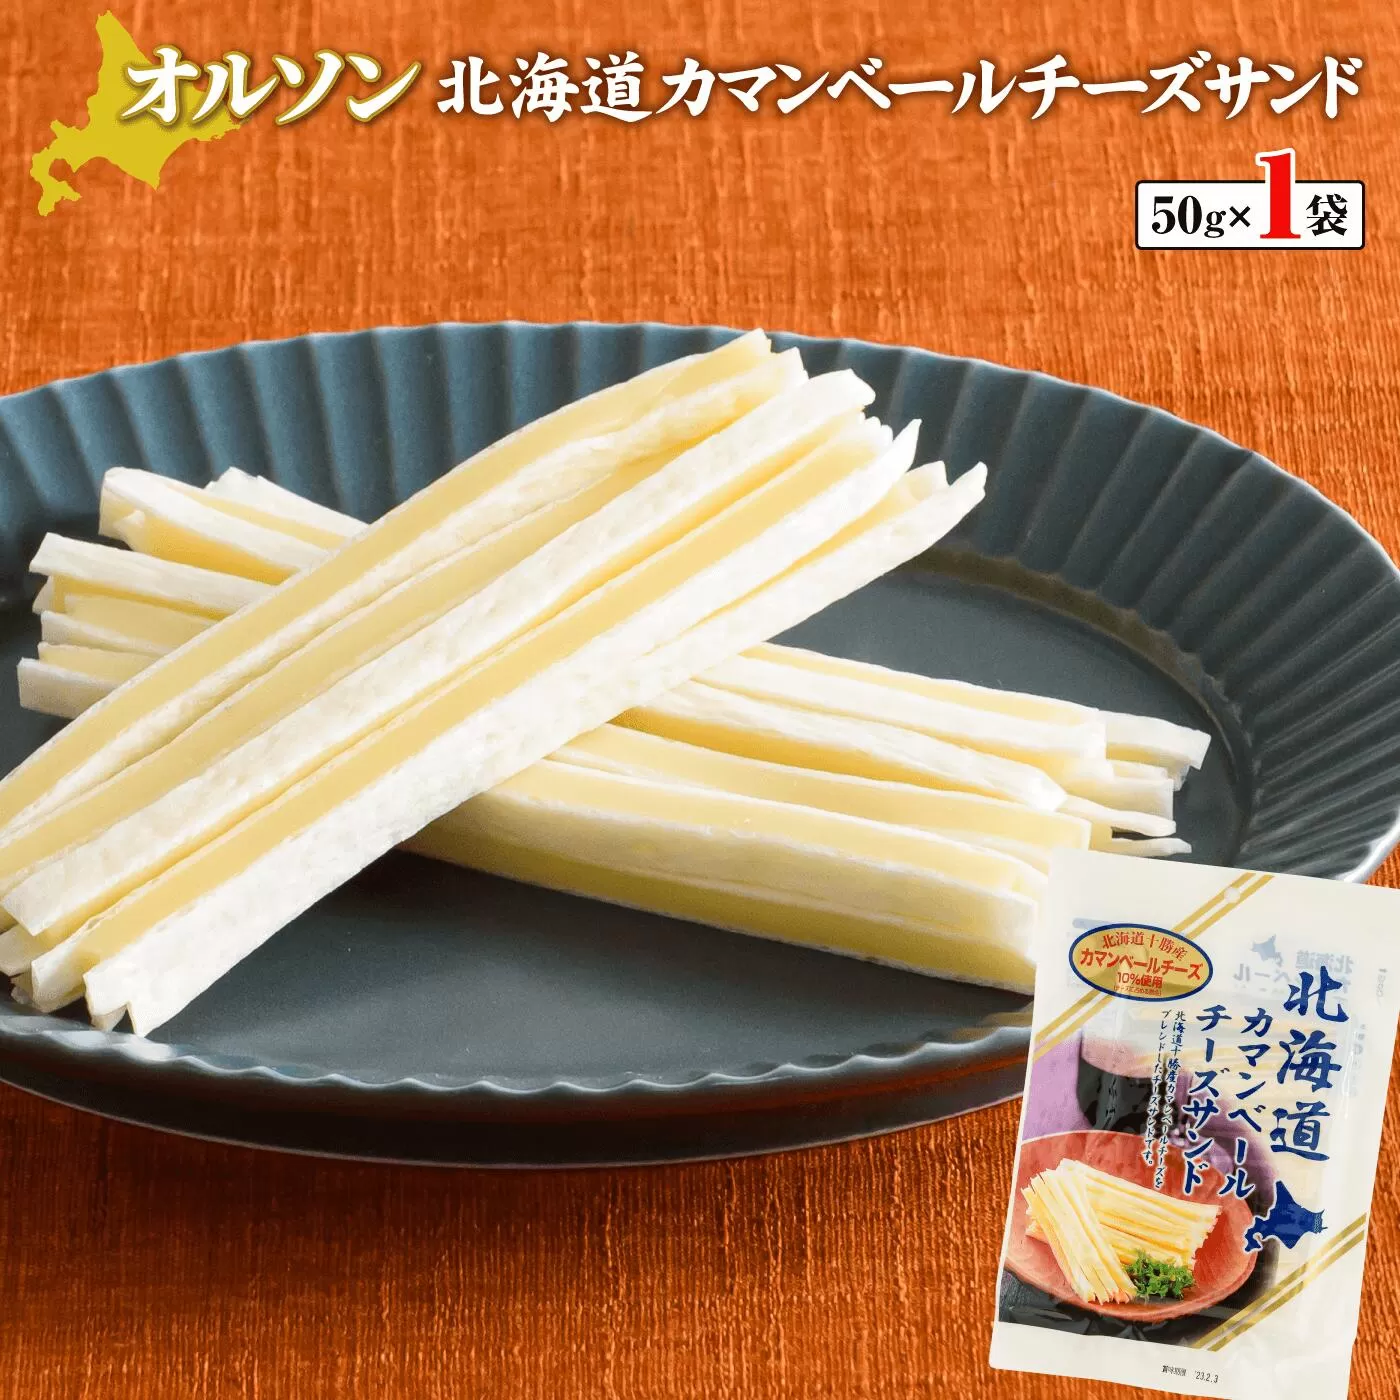 北海道カマンベールチーズサンド 50g×1袋《北海道恵庭市》【04009】